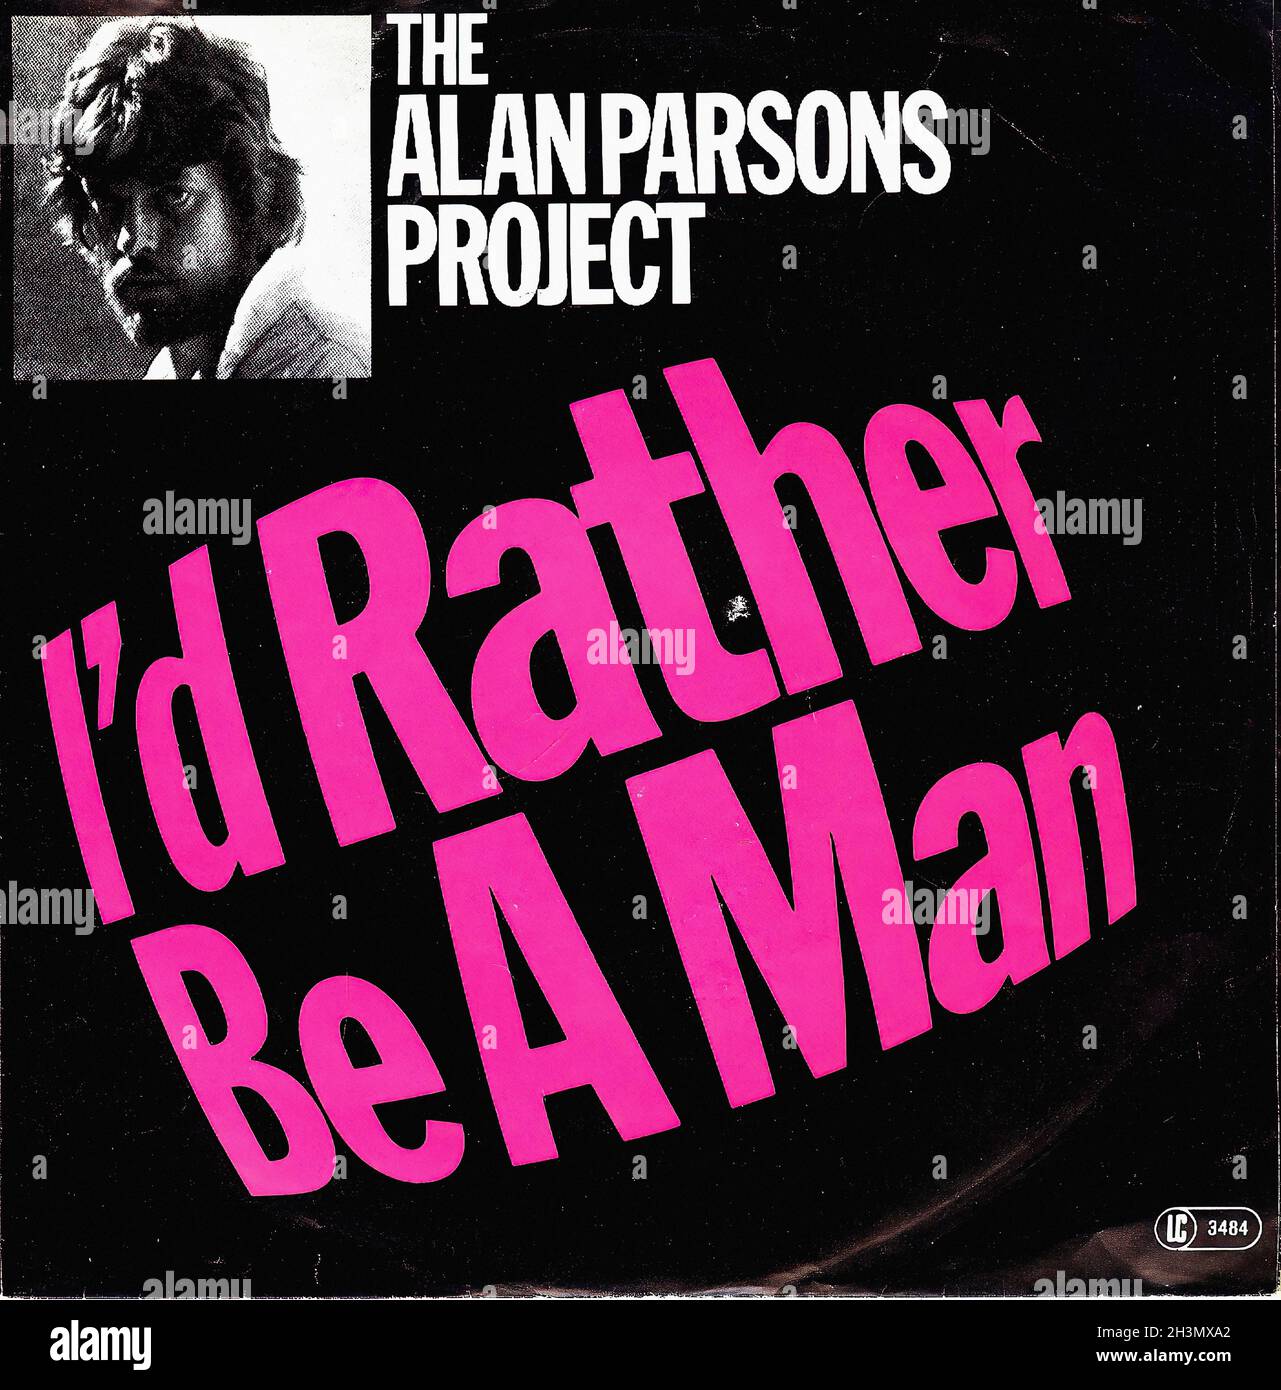 Vintage Vinyl Recording - Parsons, Alan The Project - Lucifer - D - 1979 01 Stock Photo